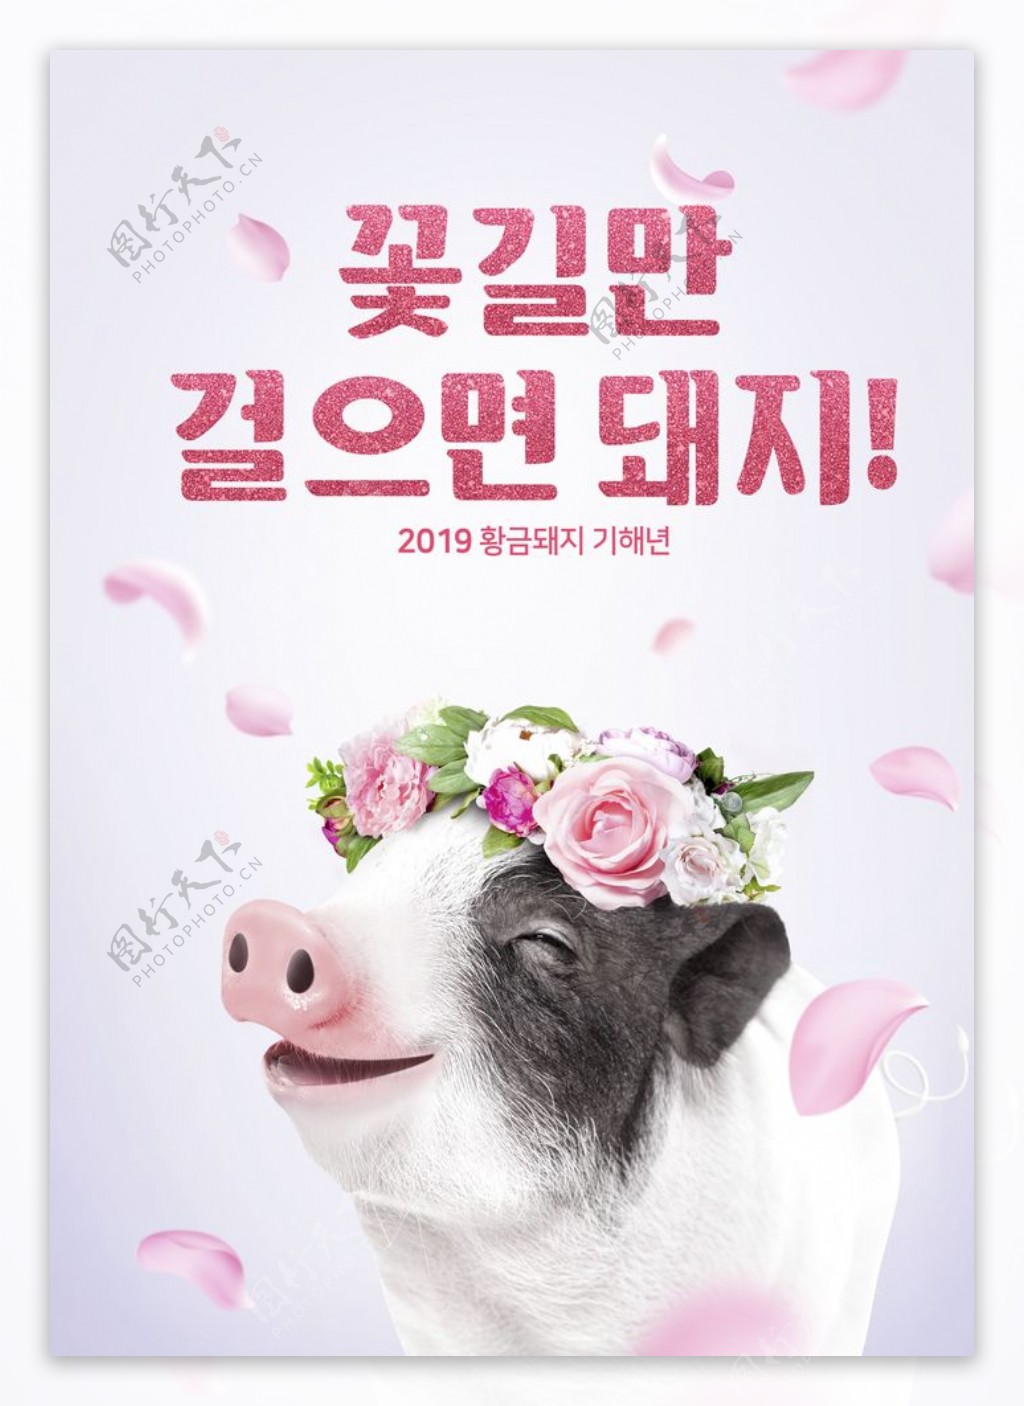 创意金猪节日商场活动海报